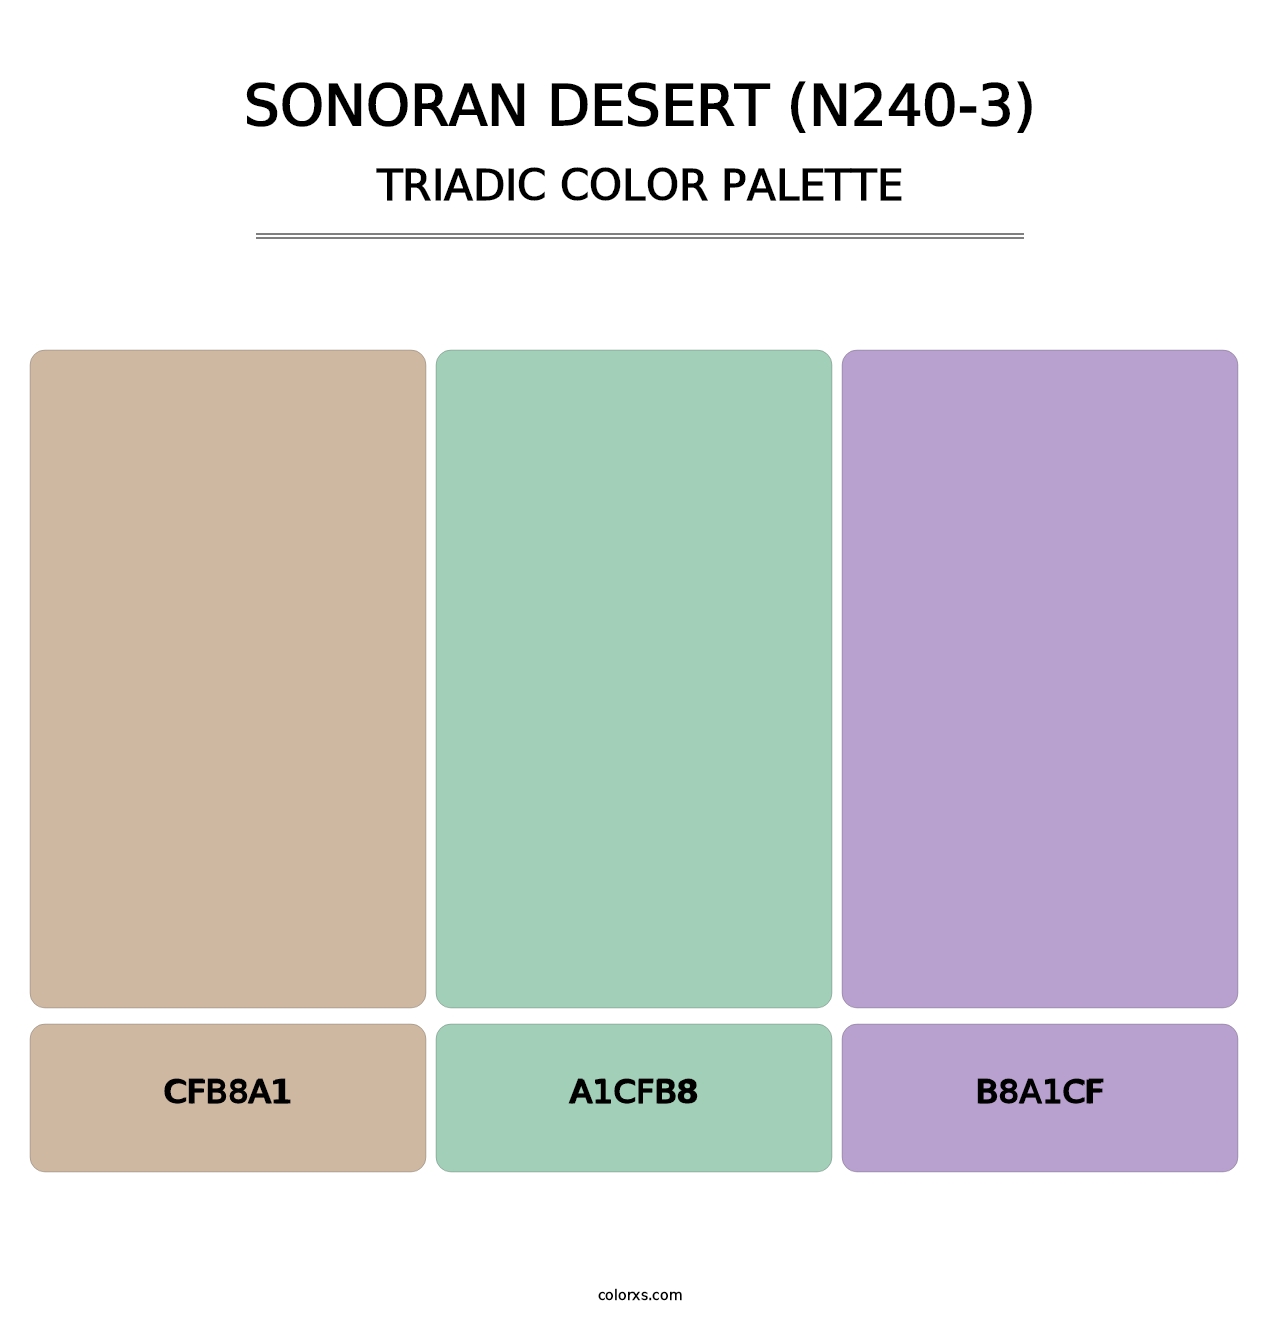 Sonoran Desert (N240-3) - Triadic Color Palette